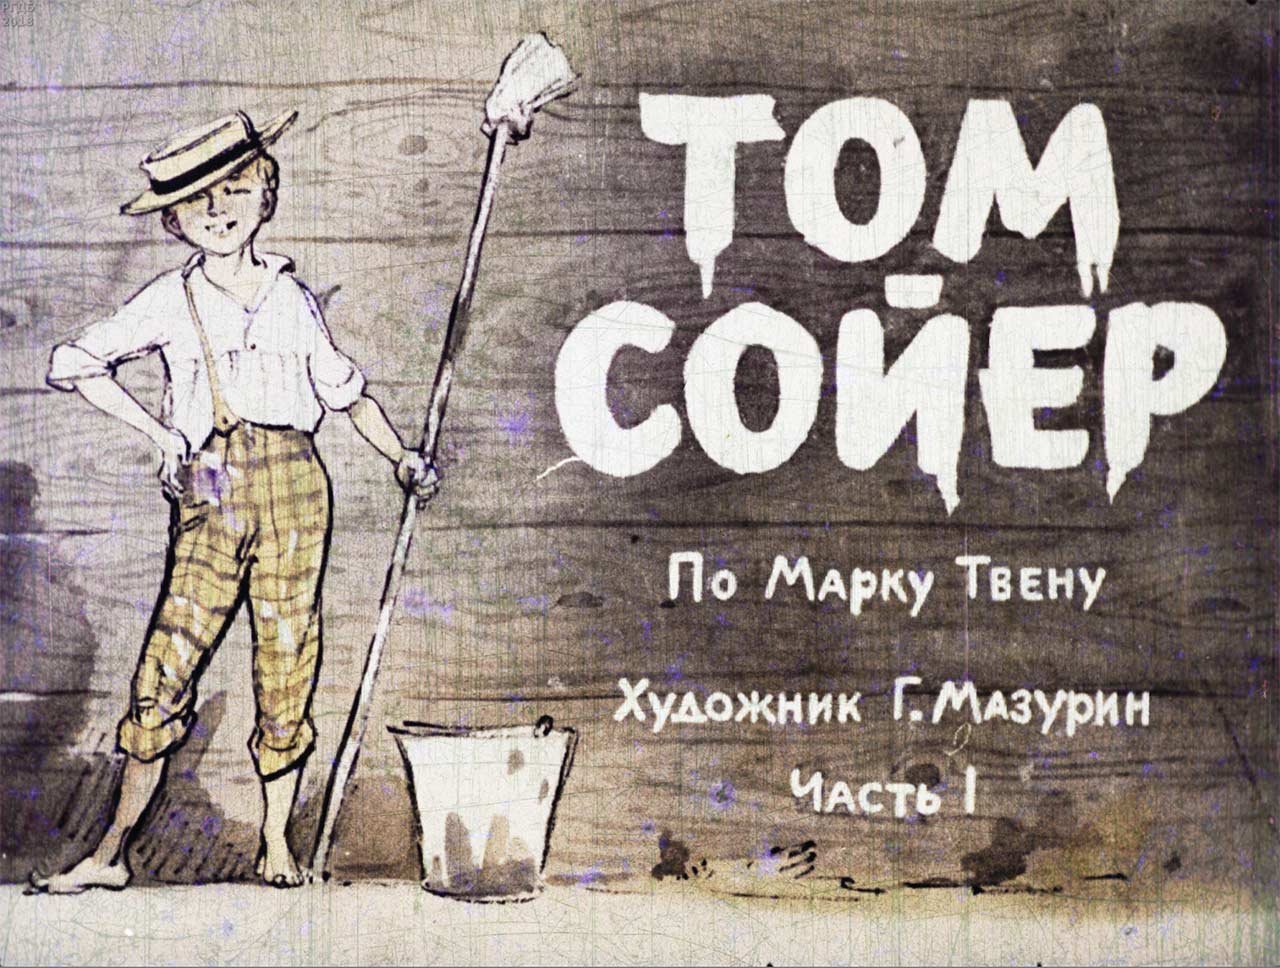 Сойер маляр. Диафильм приключения Тома Сойера. Том Сойер великолепный маляр. Том Сойер иллюстрации к книге.